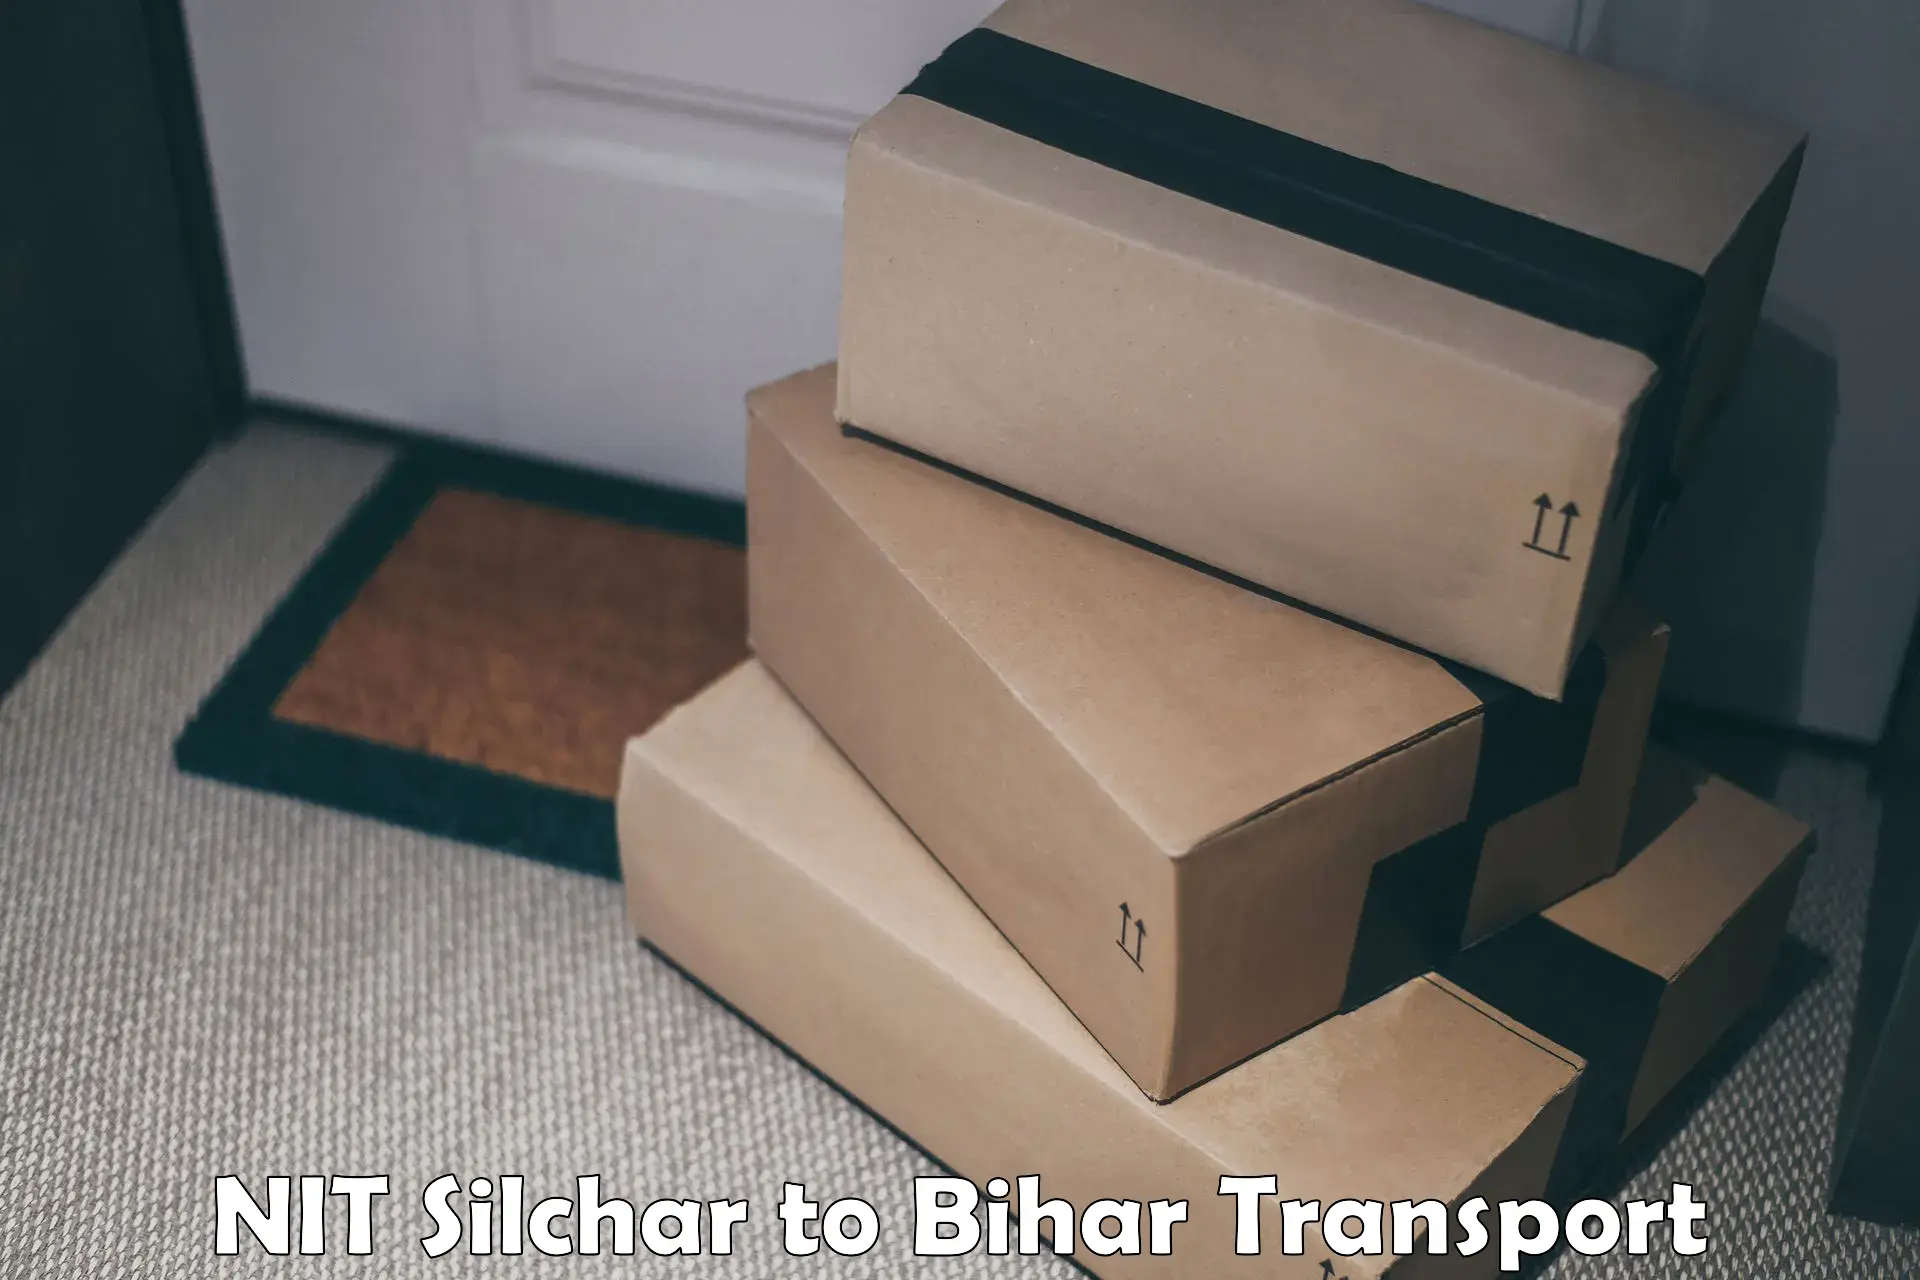 Commercial transport service NIT Silchar to Aurangabad Bihar